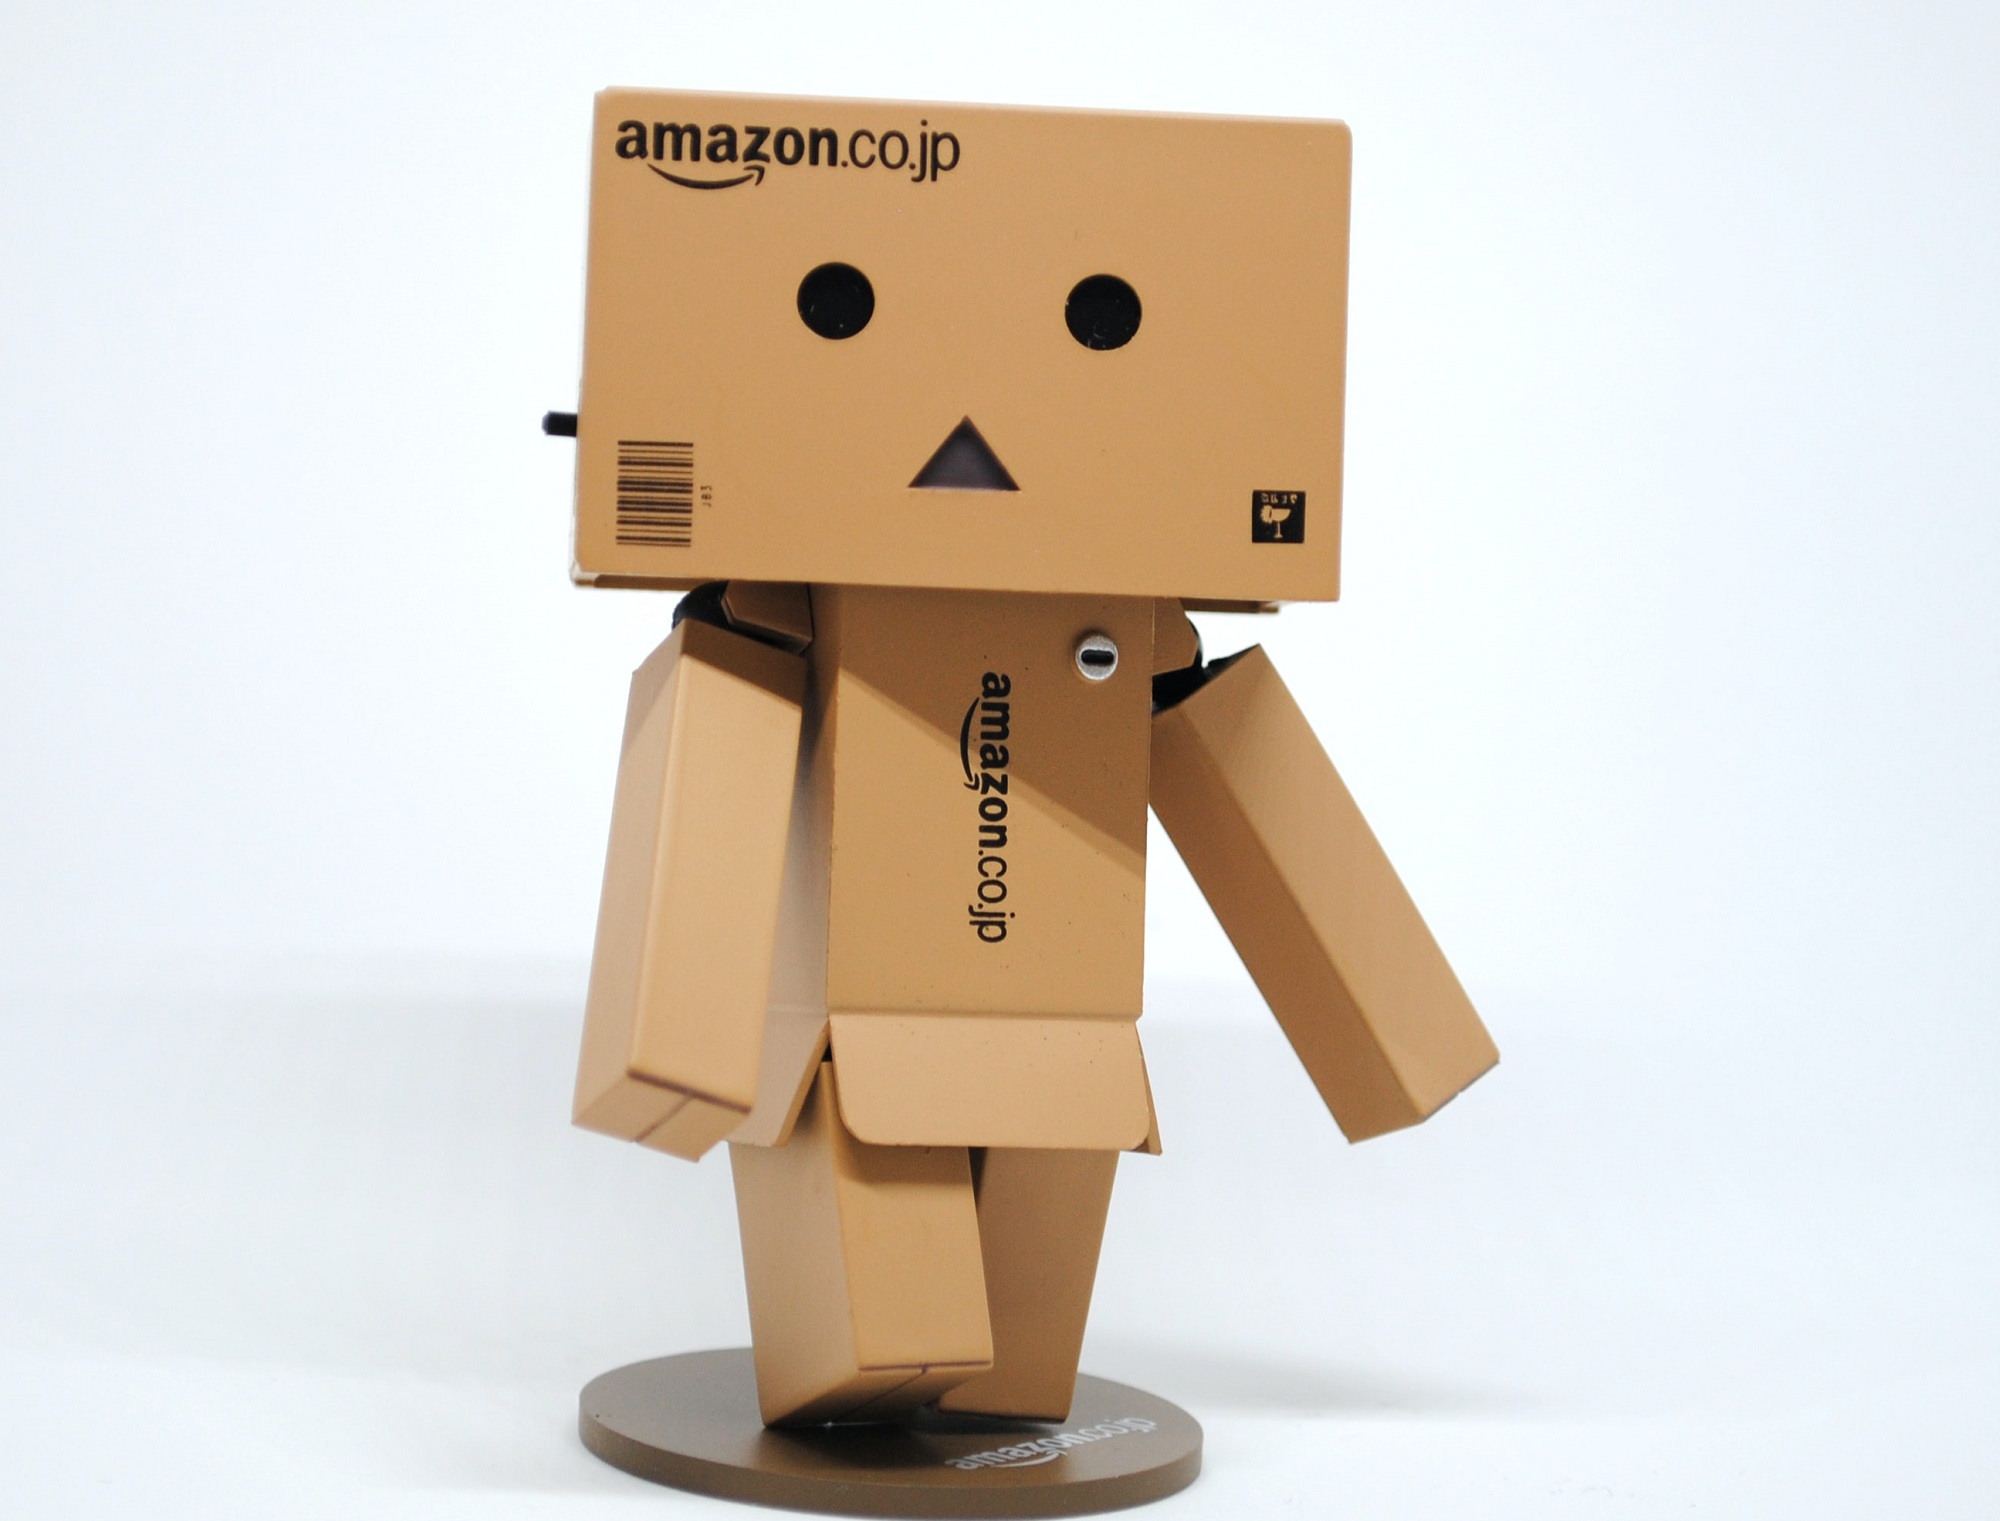 Cajas de Amazon formadas en una figura similar a un robot